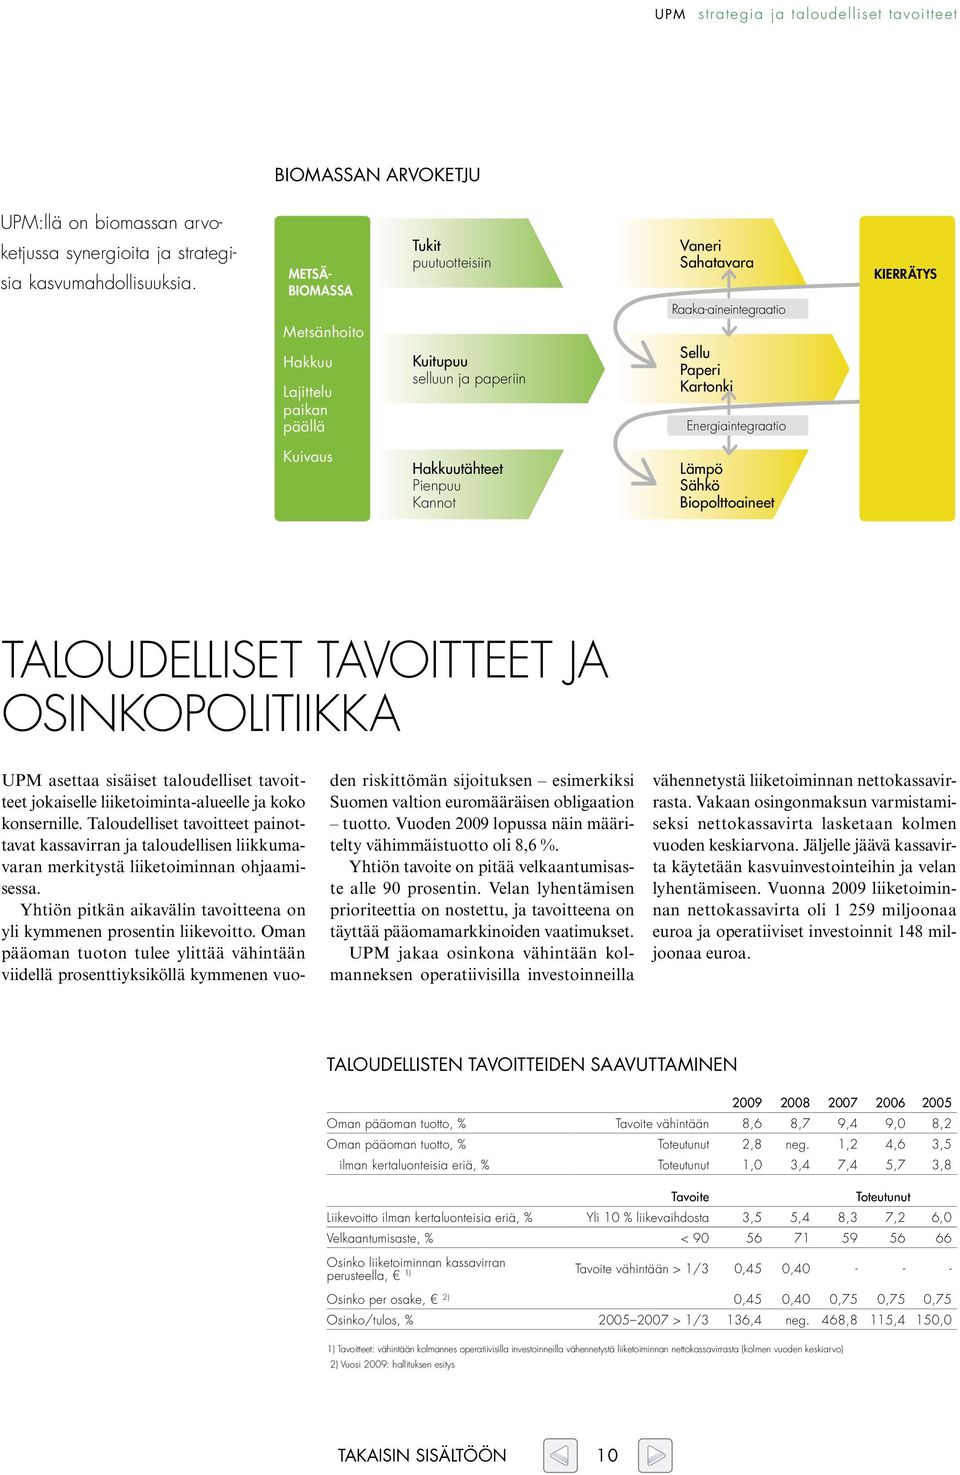 Kuivaus Hakkuutähteet Pienpuu Kannot Lämpö Sähkö Biopolttoaineet Taloudelliset tavoitteet ja osinkopolitiikka den riskittömän sijoituksen esimerkiksi Suomen valtion euromääräisen obligaation tuotto.